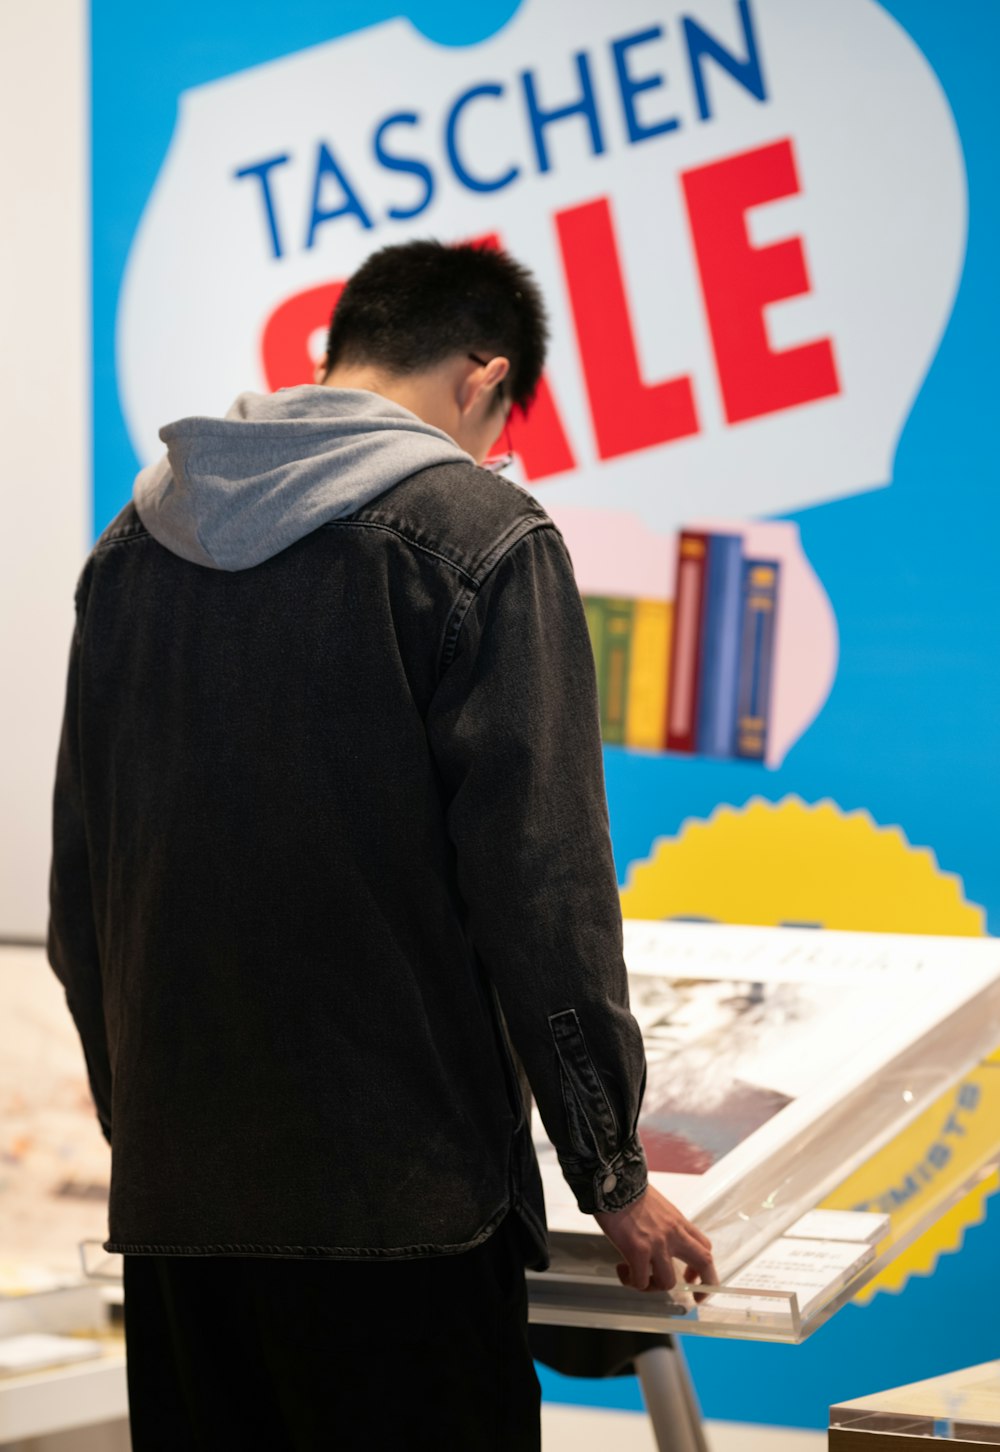 Un homme debout devant un panneau indiquant Taschen Sale